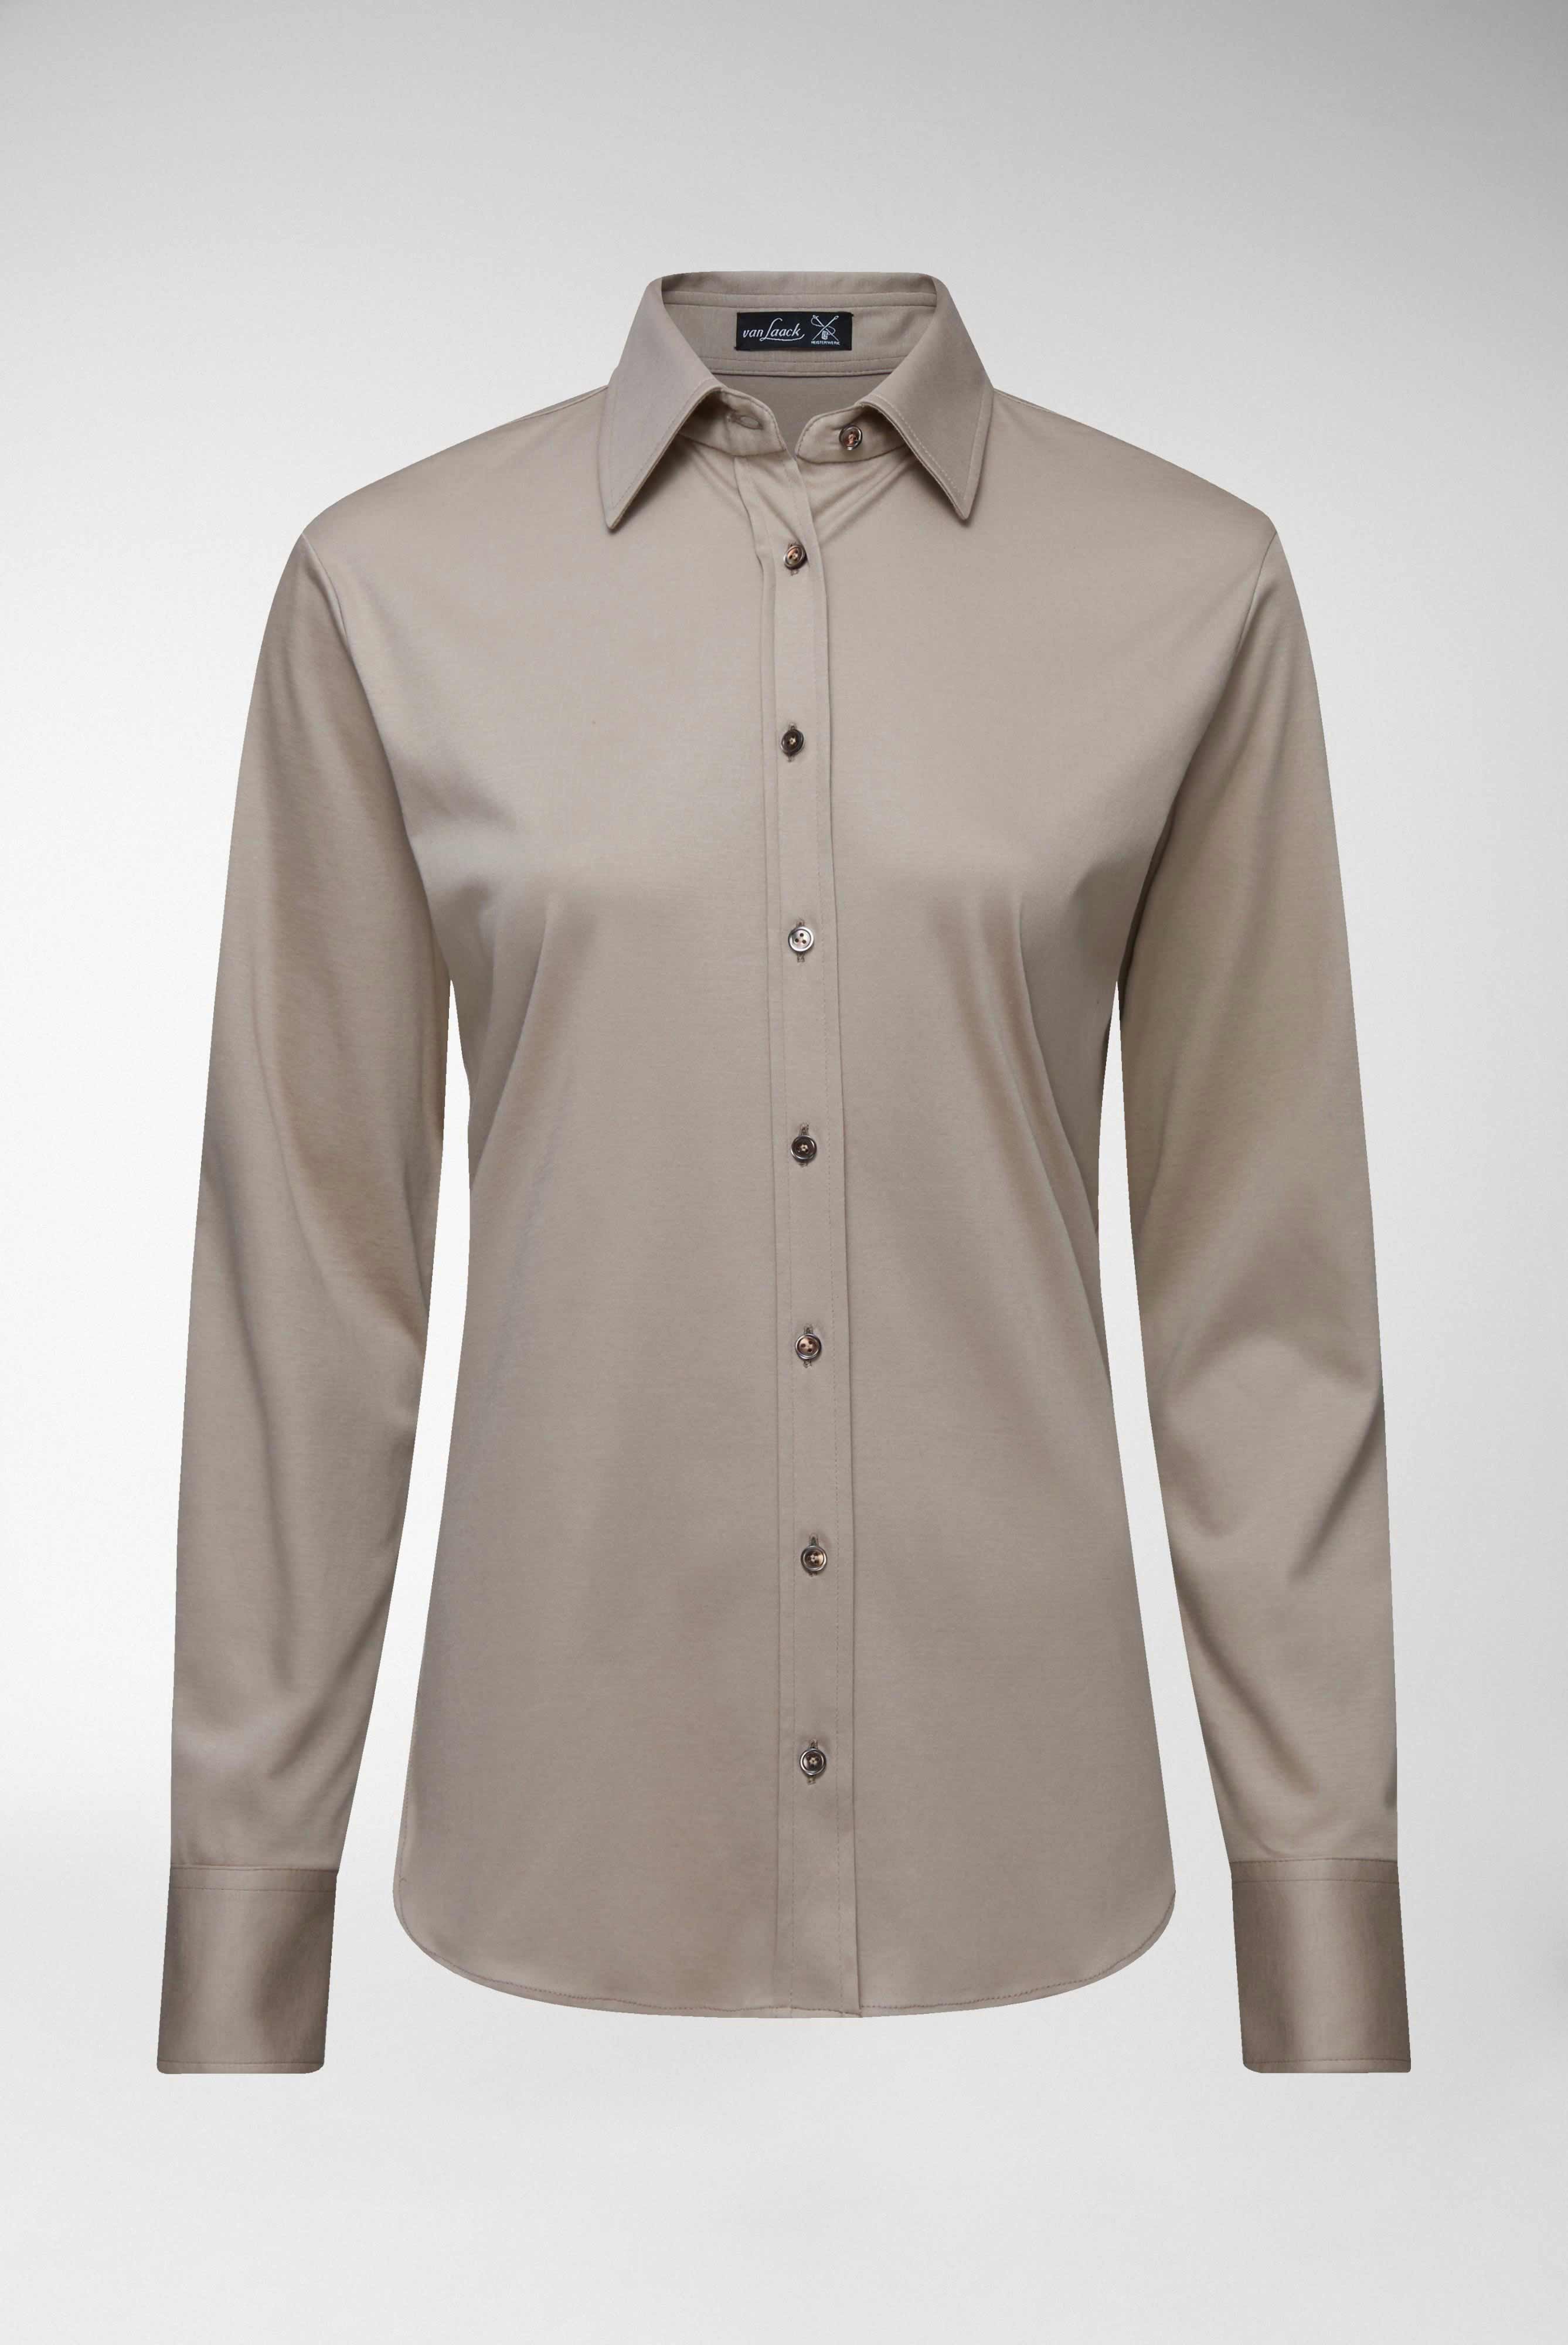 Casual Blusen+Taillierte Jersey Hemdbluse aus Schweizer Baumwolle+05.603Y..180031.140.46